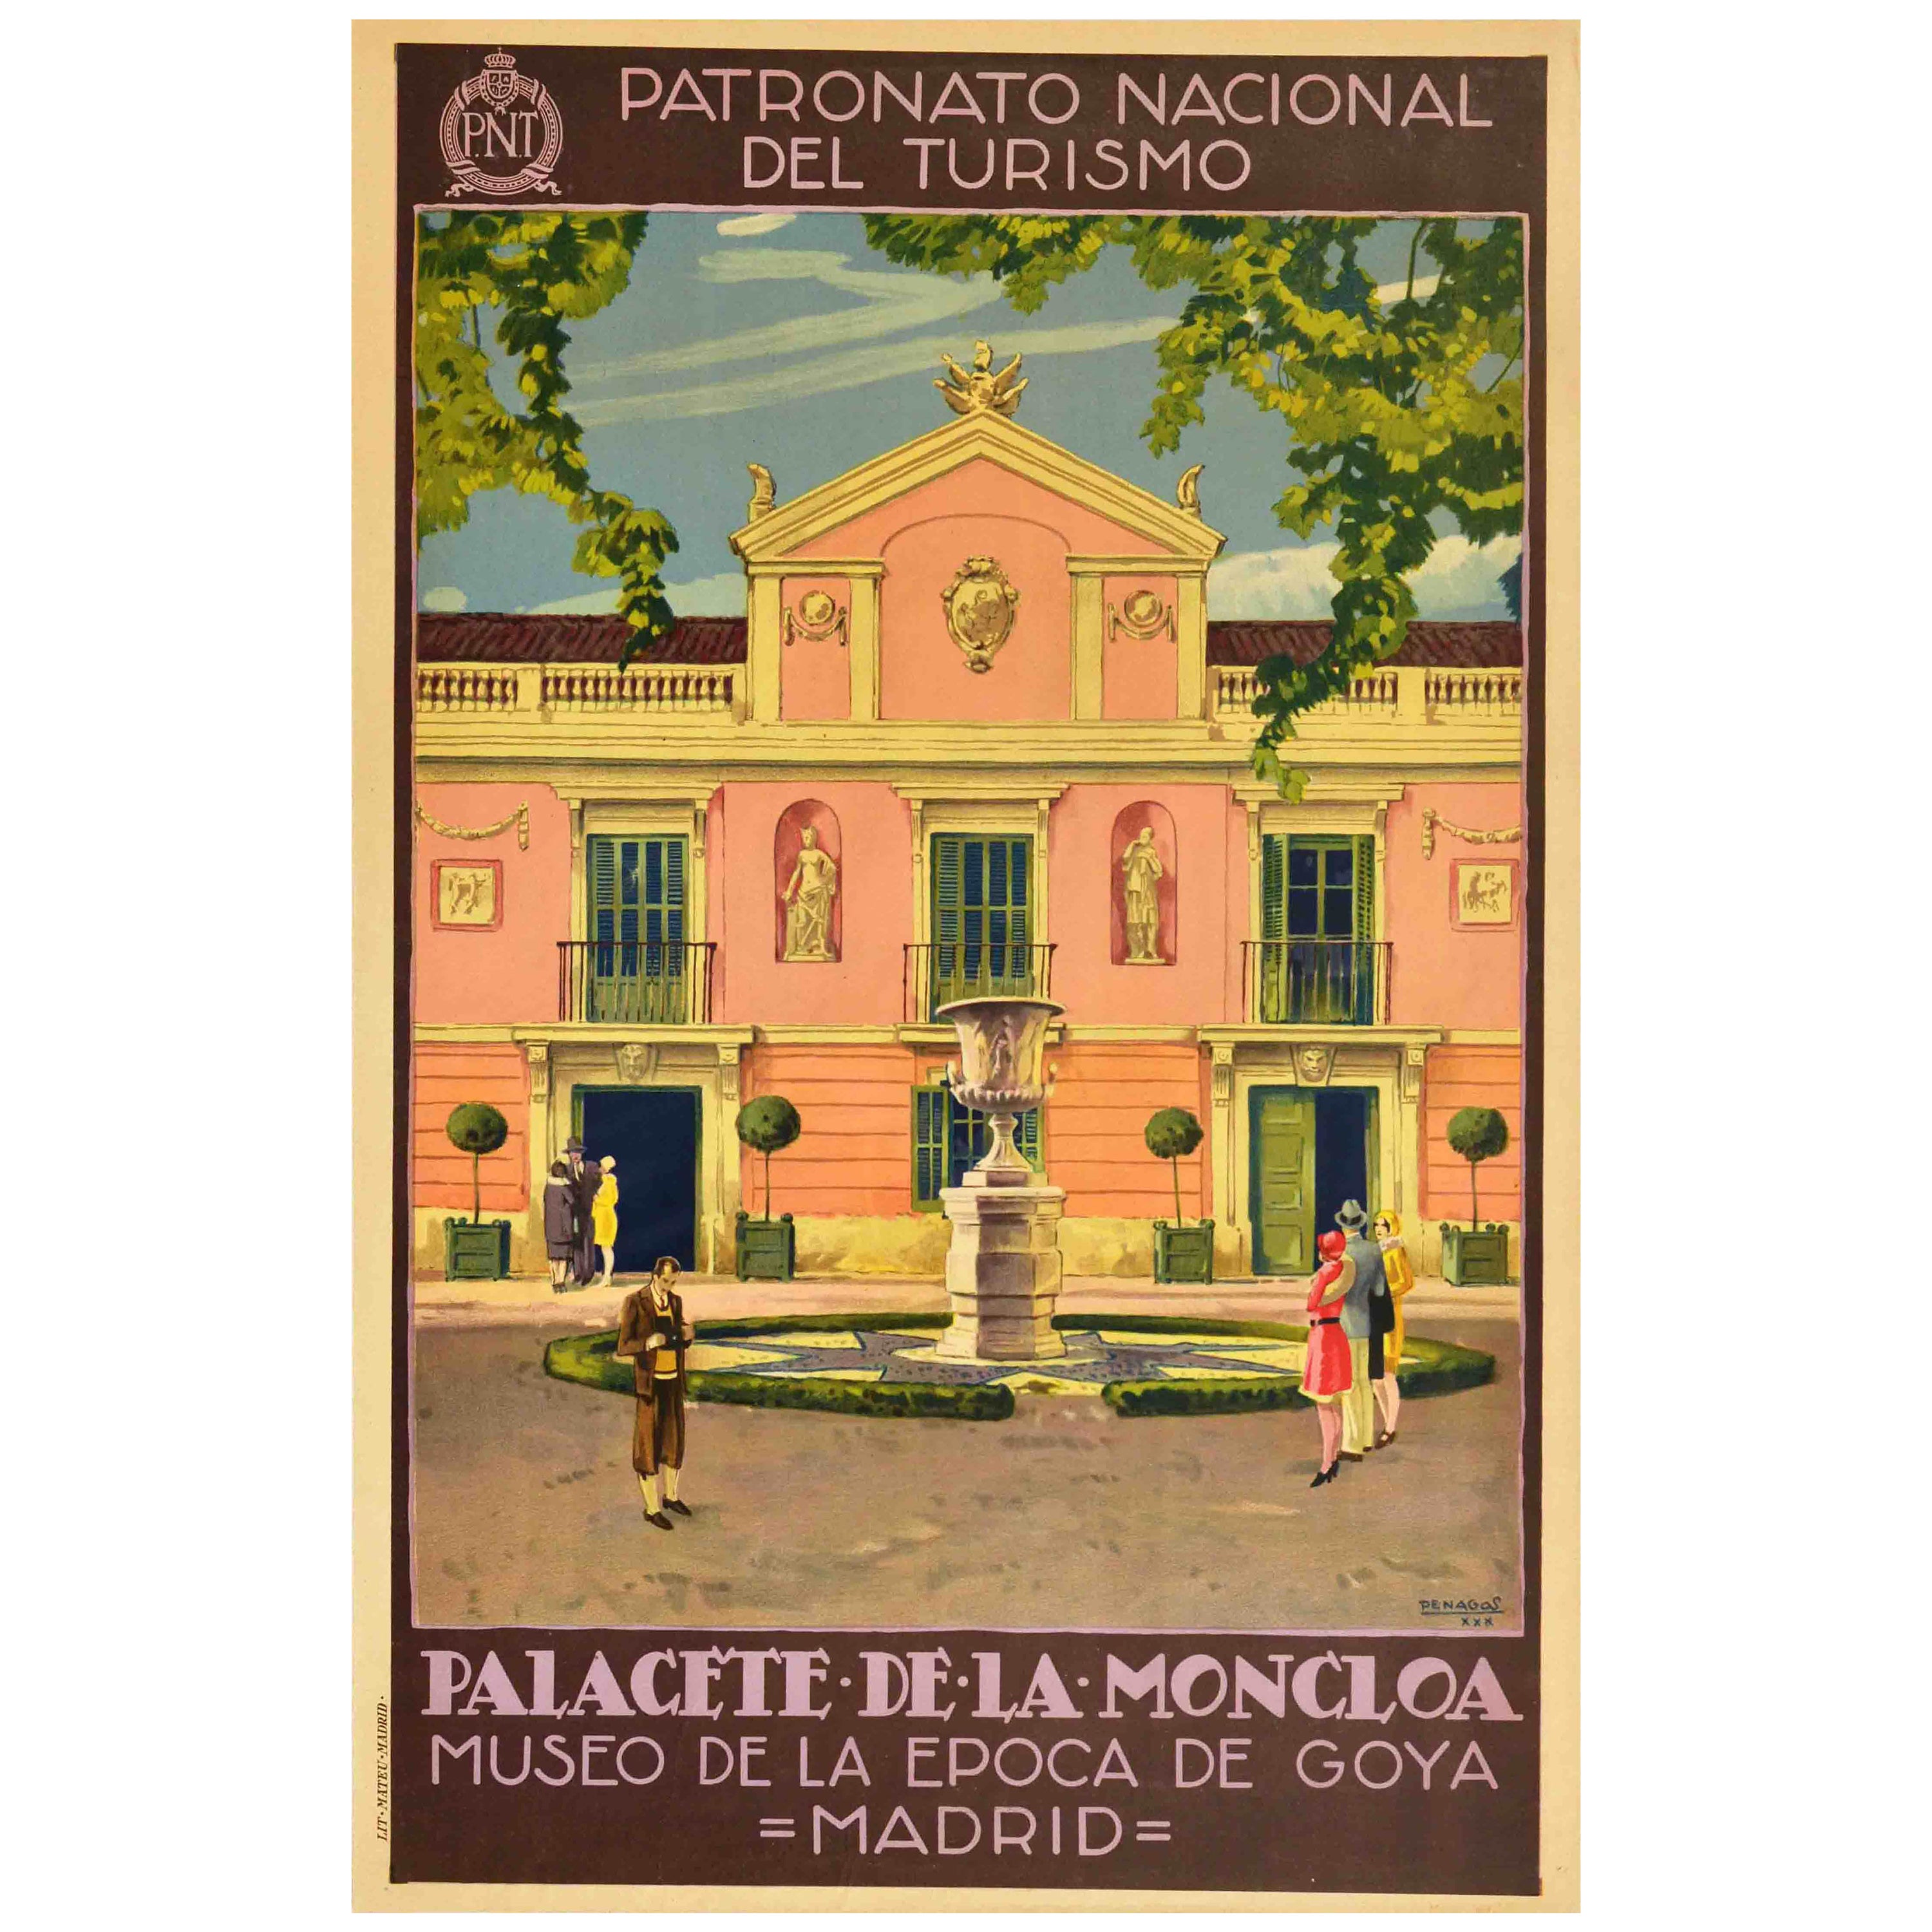 Original-Vintage-Reiseplakat, Palacete De La Moncloa Palace, PNT Madrid, Spanien